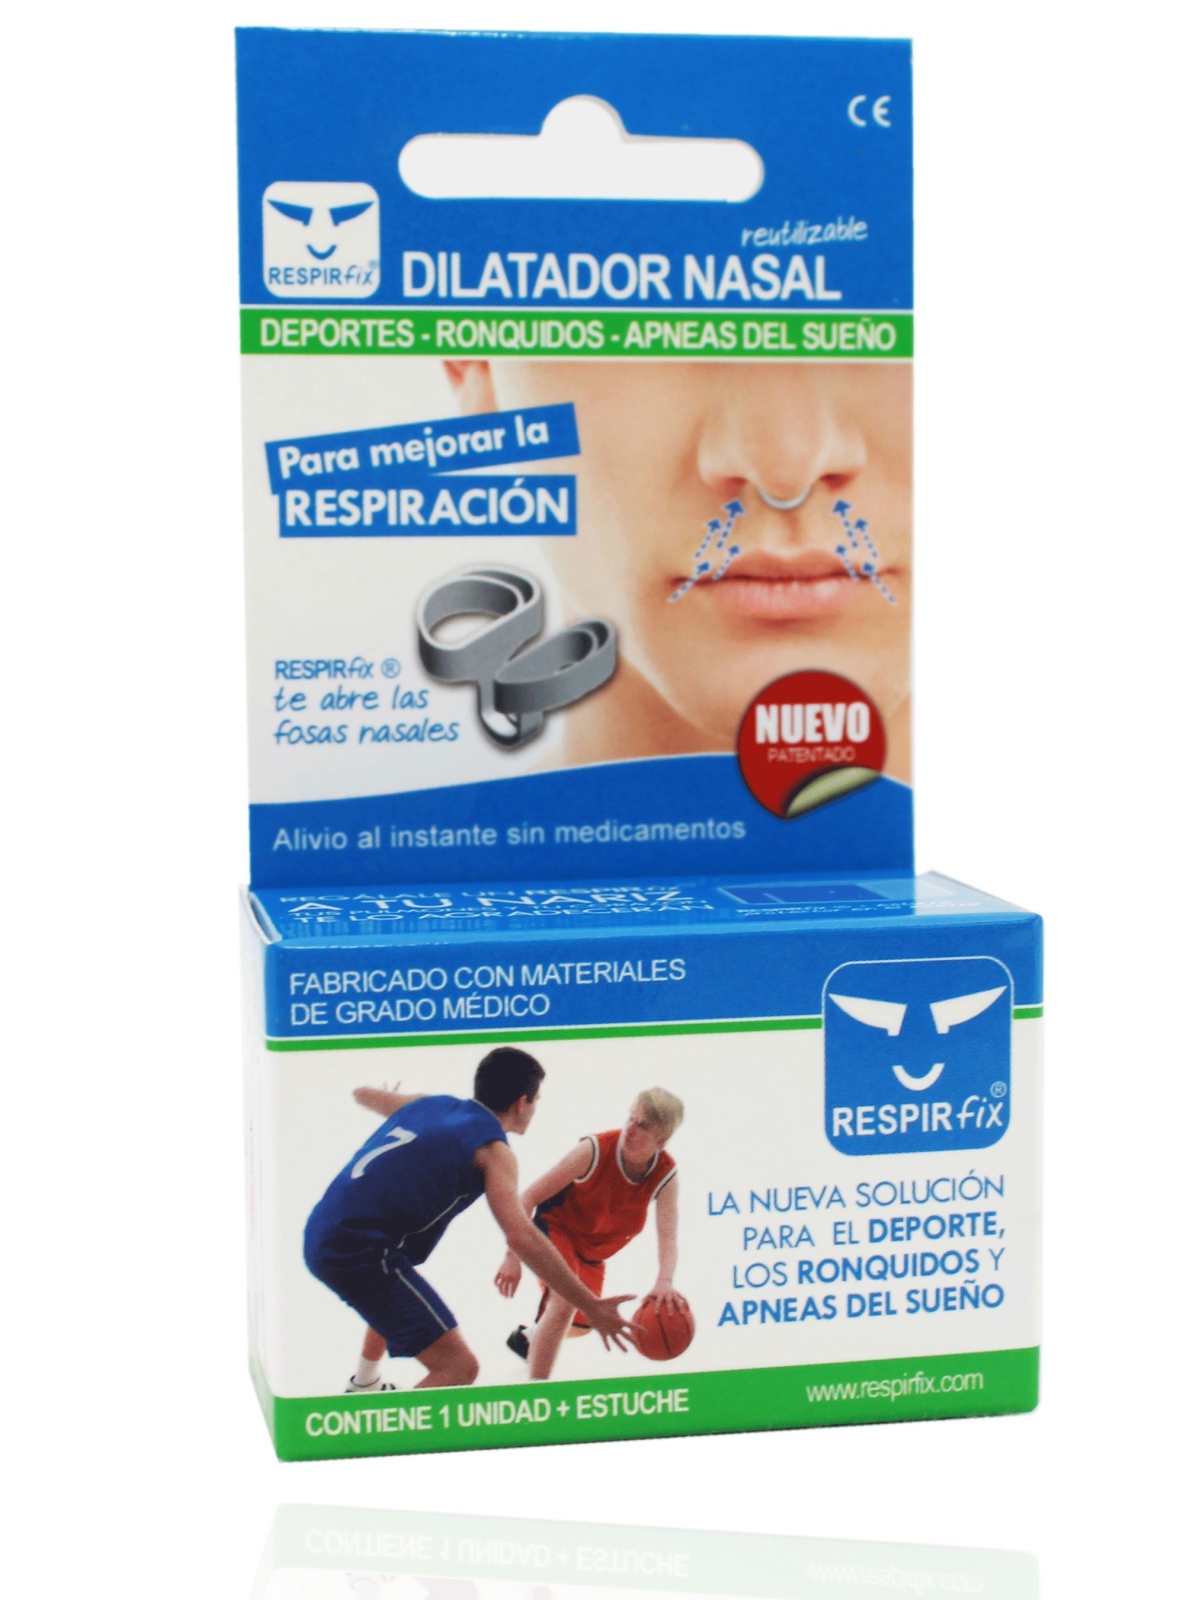 Dilatador nasal Respirfix